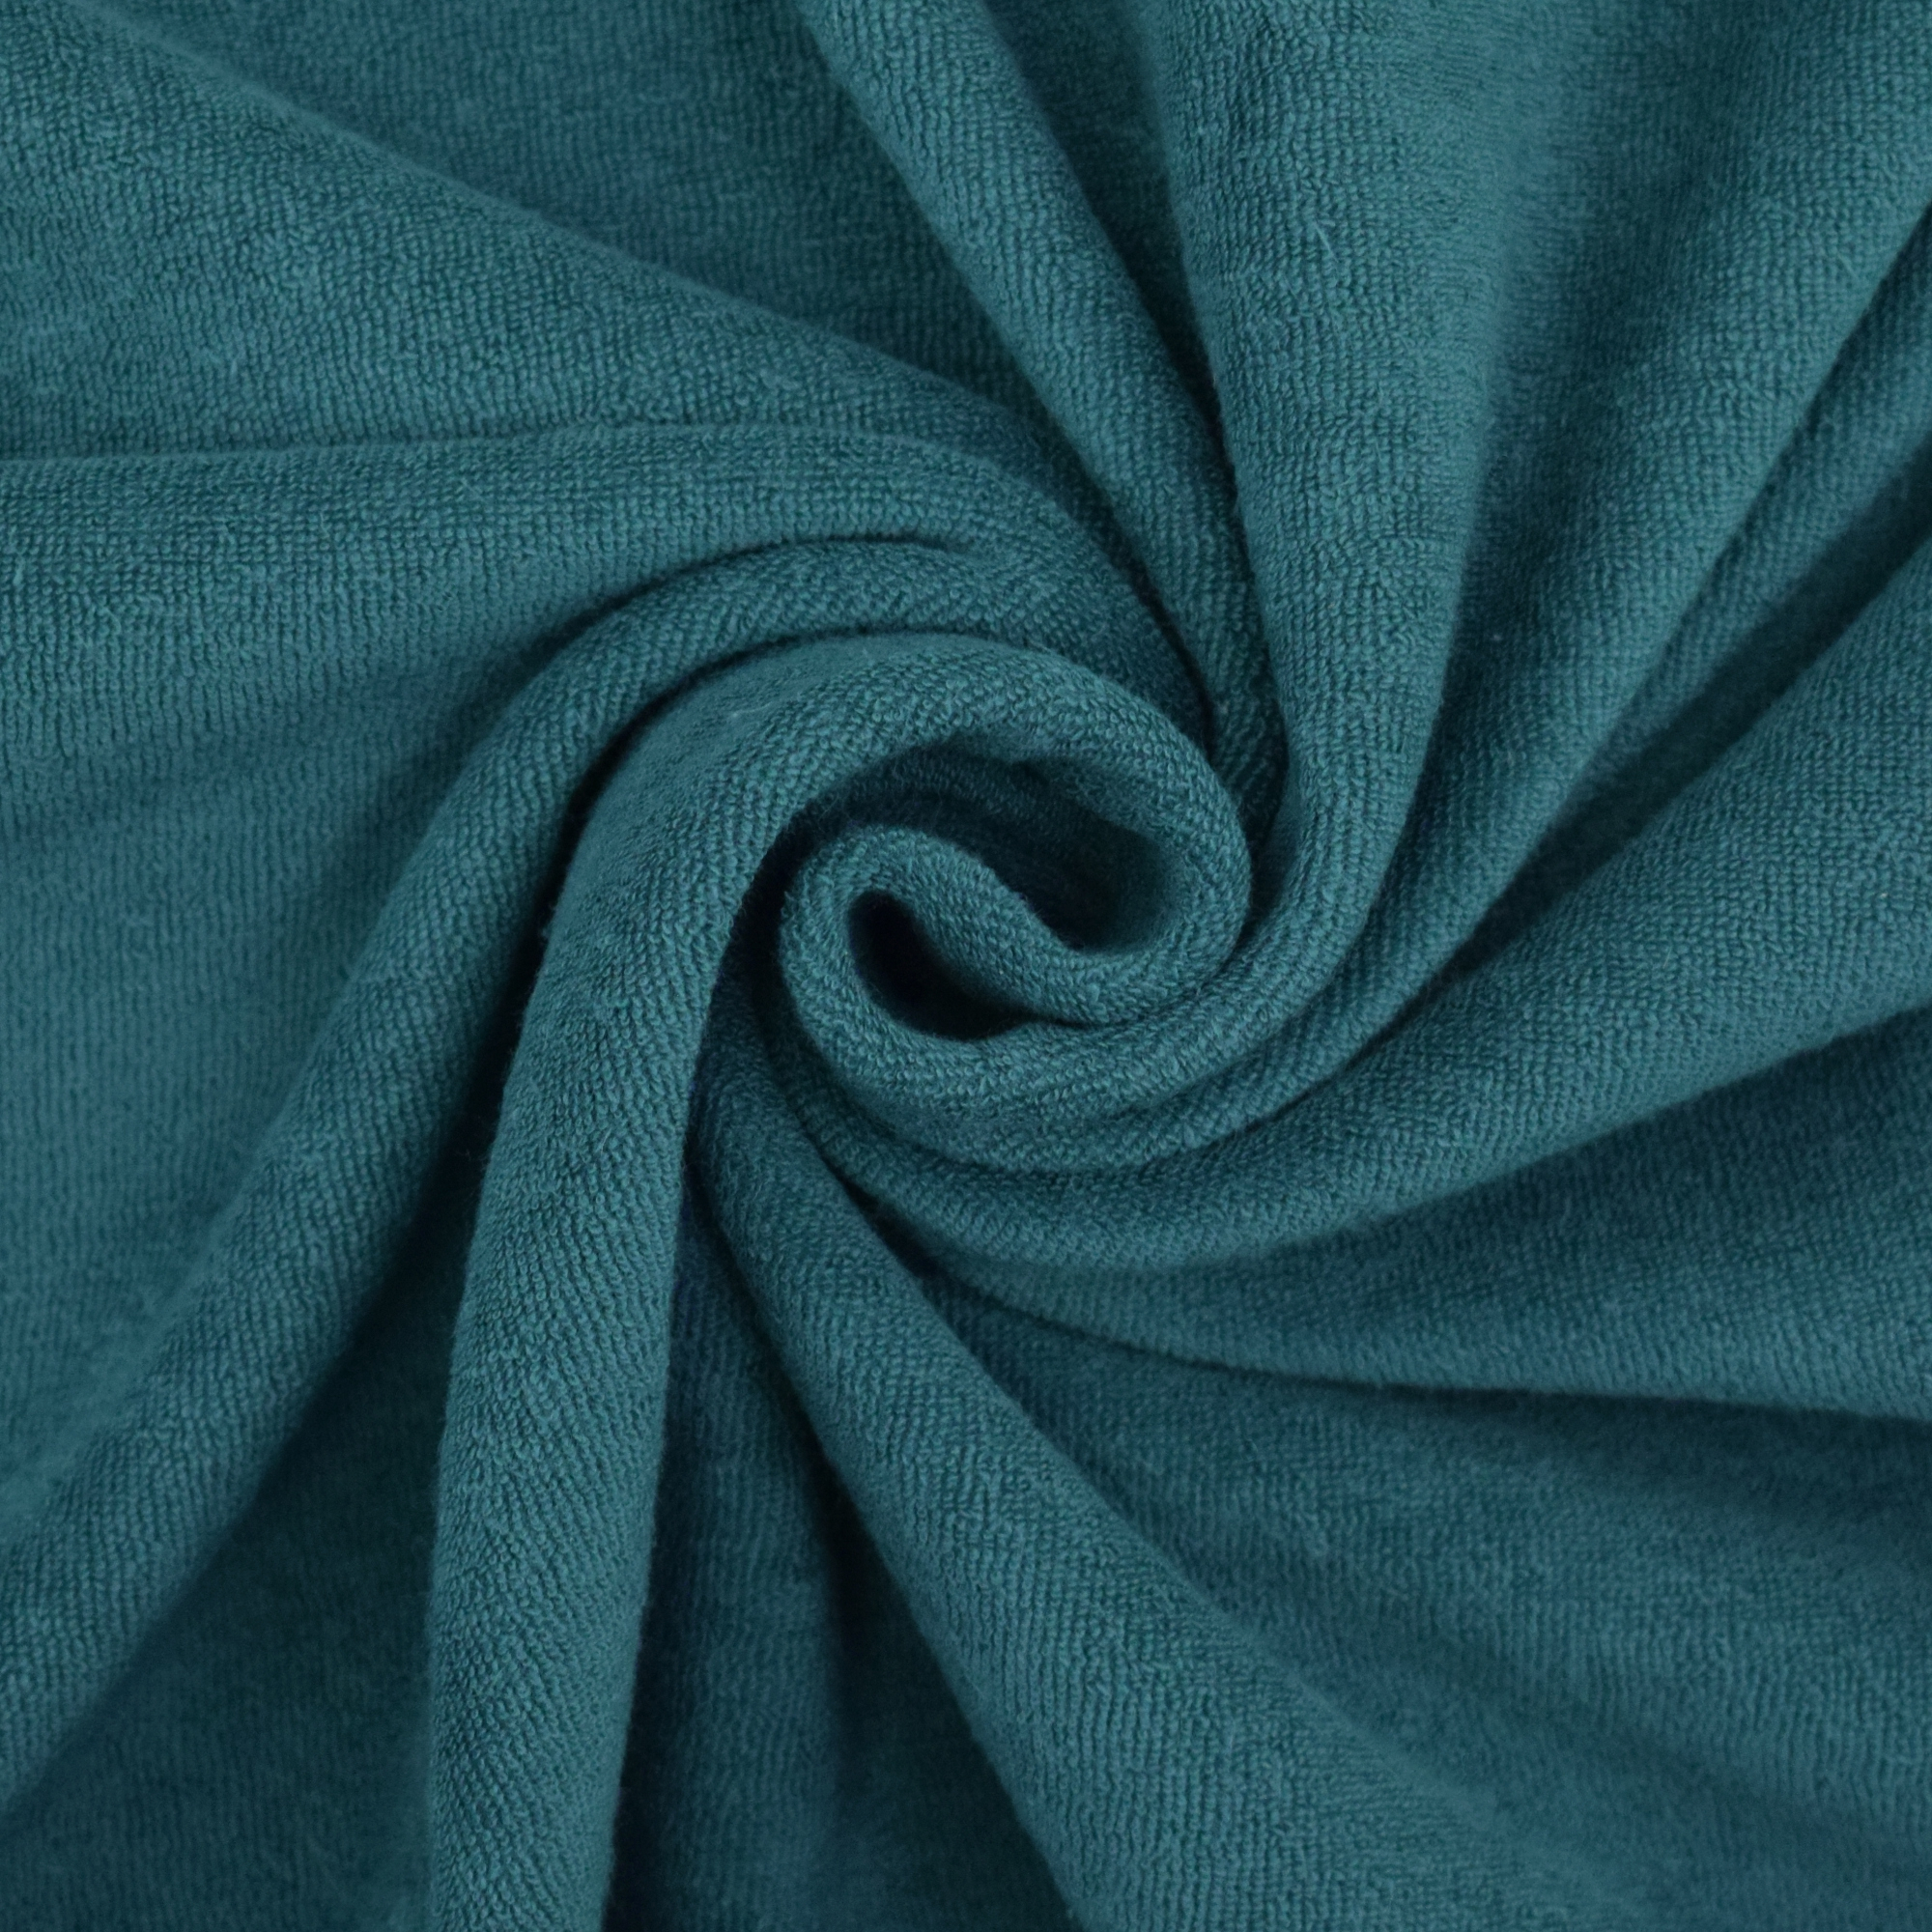 Terrycloth-Jersey, dark teal | Fabrics